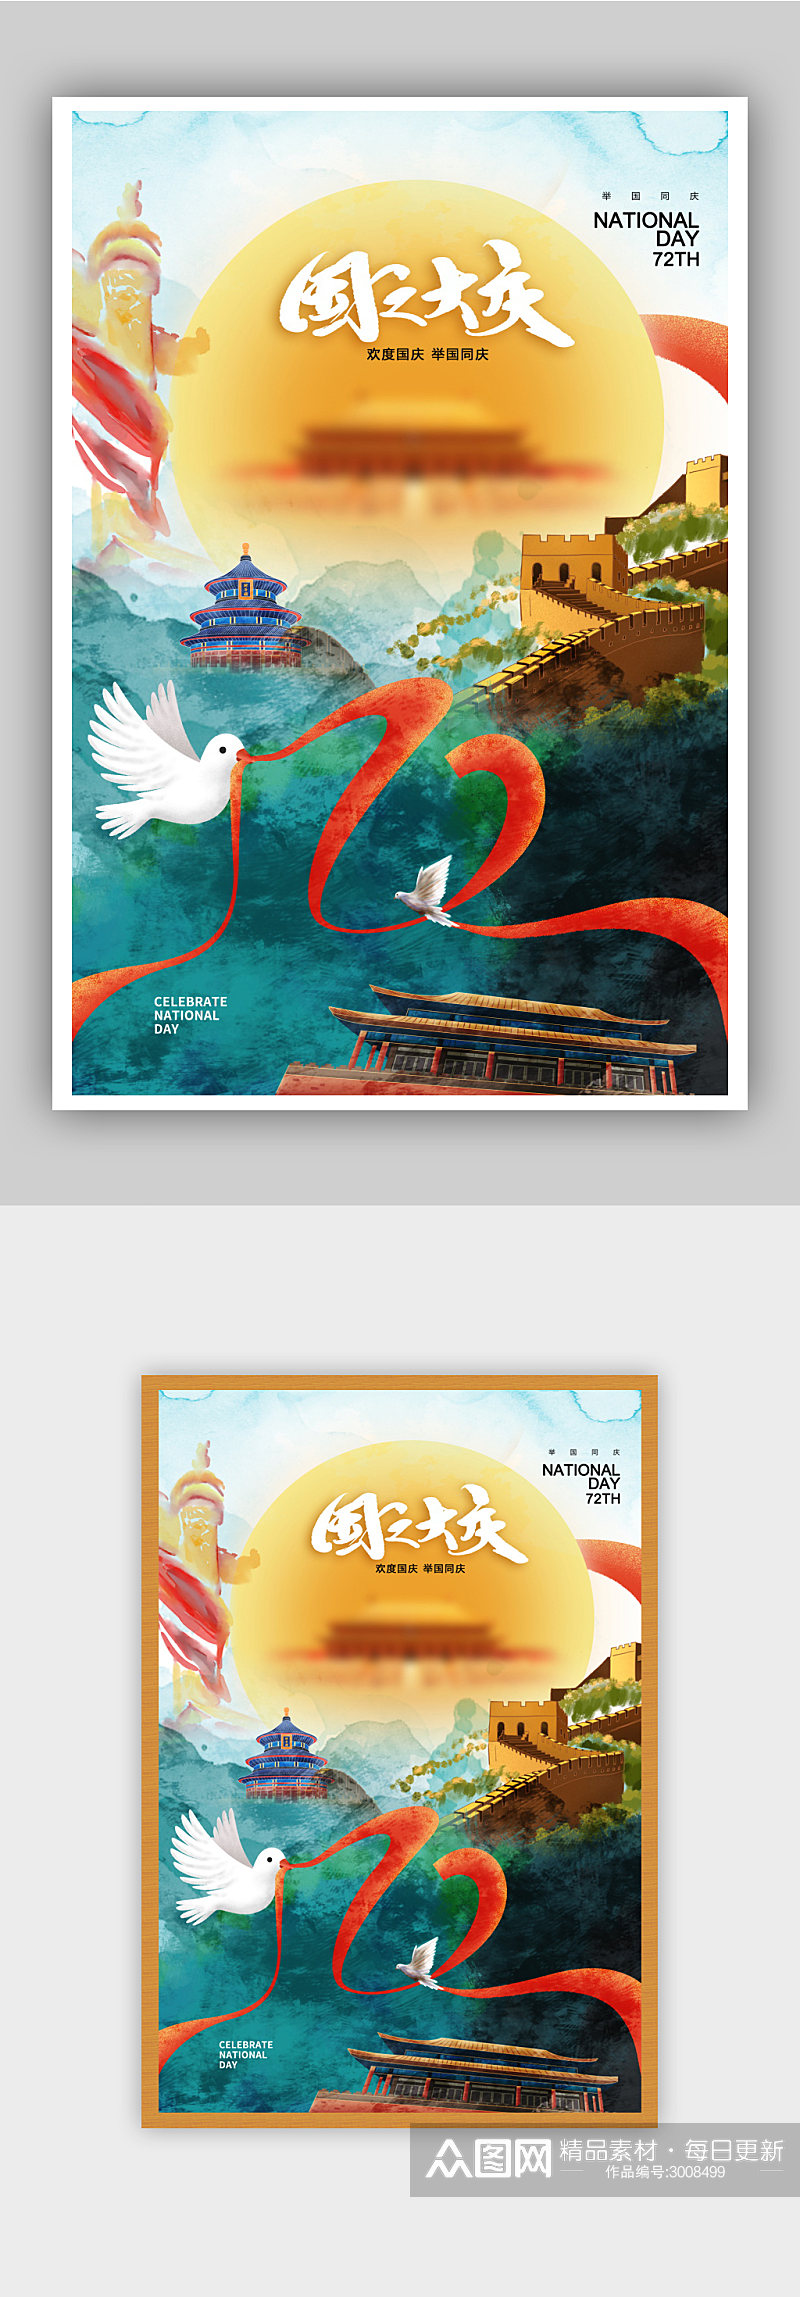 水彩风时尚大气国庆节72周年海报素材